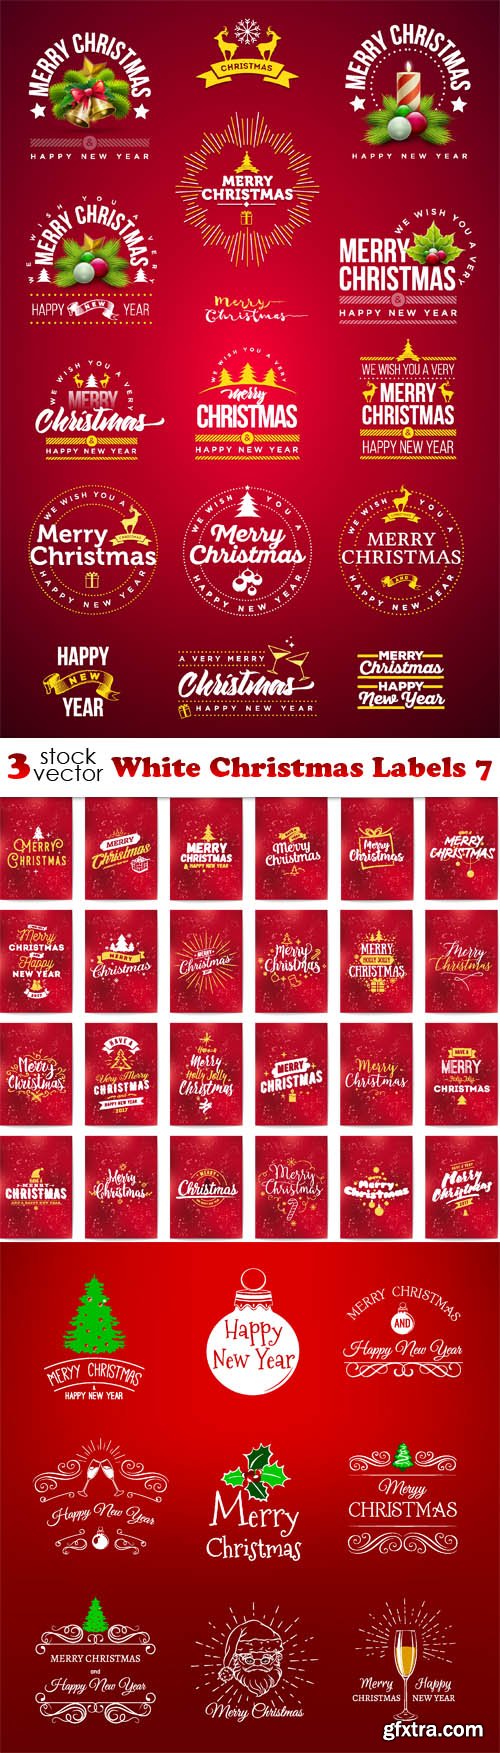 Vectors - White Christmas Labels 7